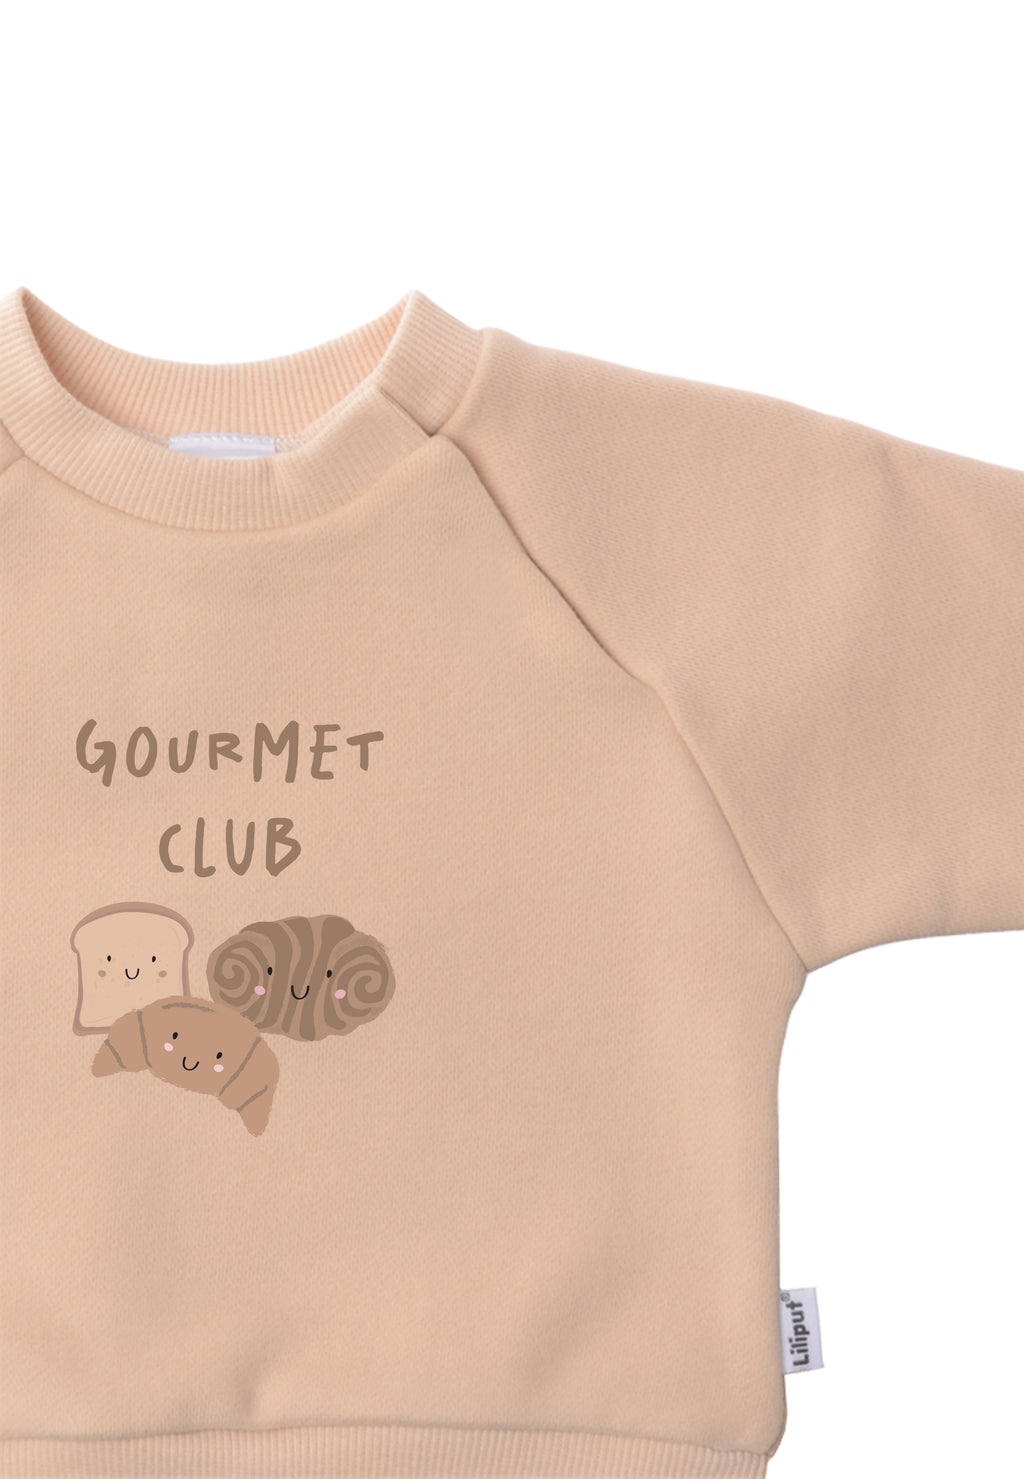 Sweatshirt in beige mit Print "Gourmet Club" auf der Vorderseite.